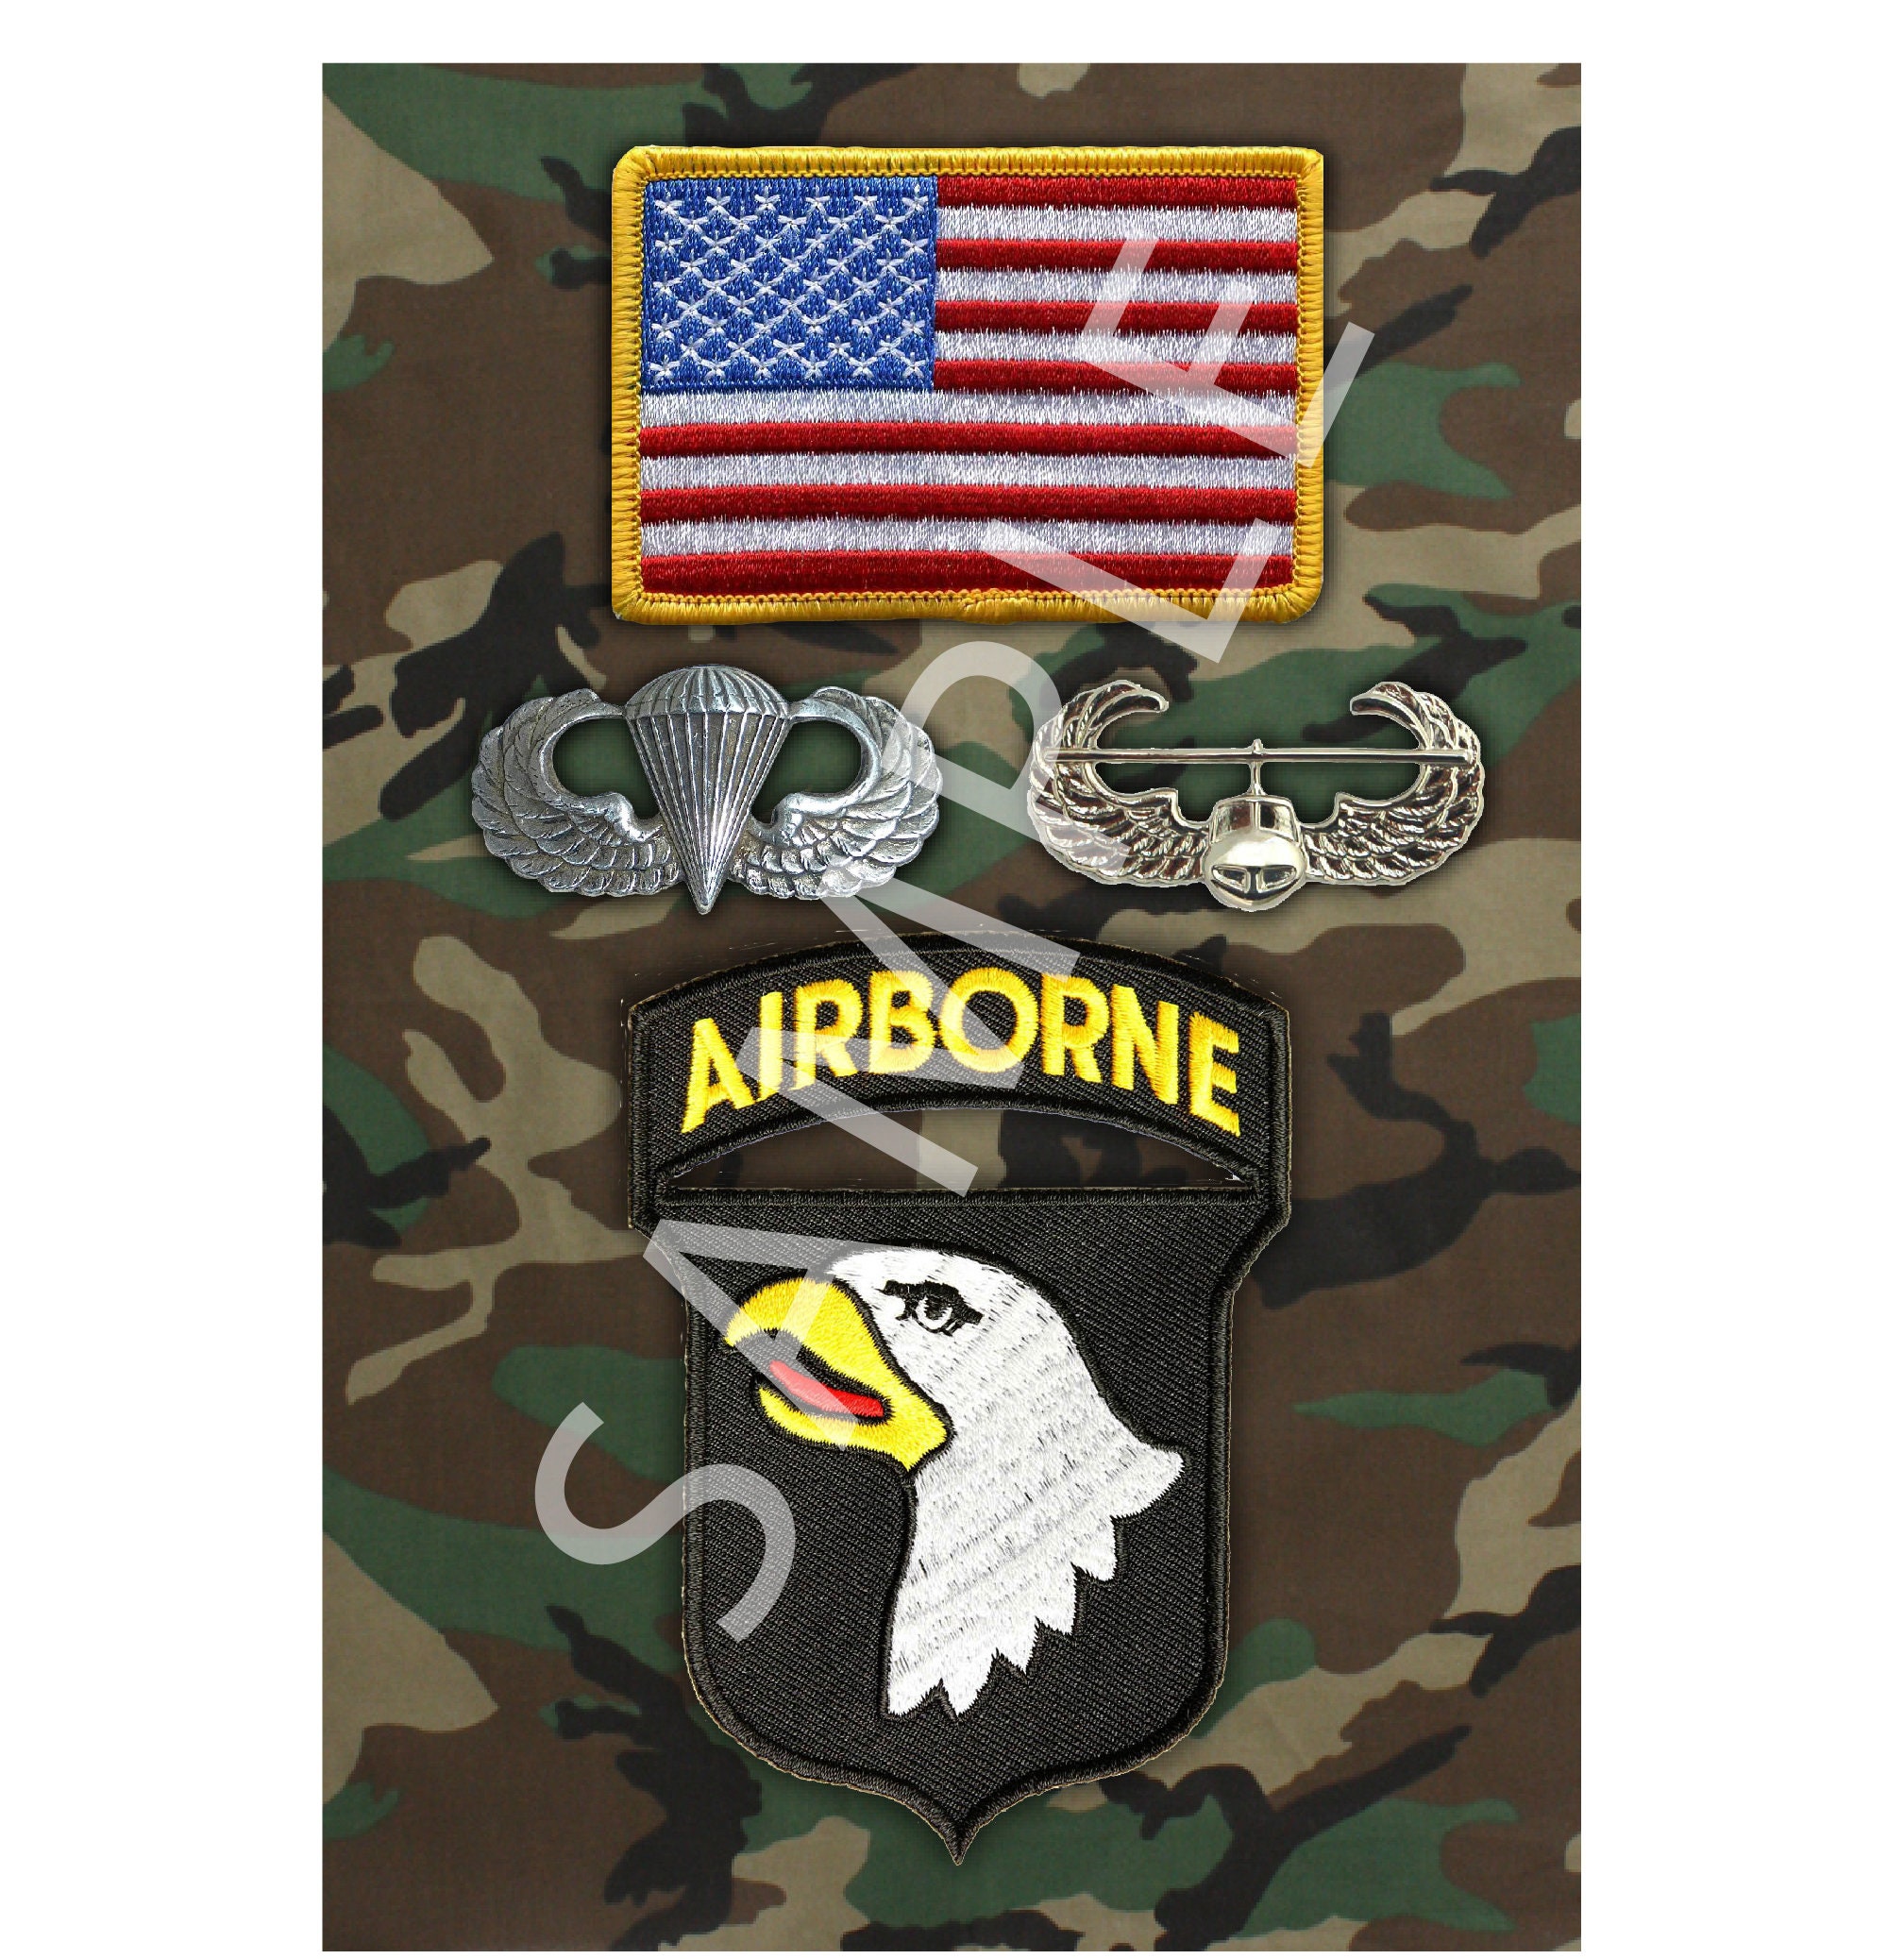 101st airborne wallpaper